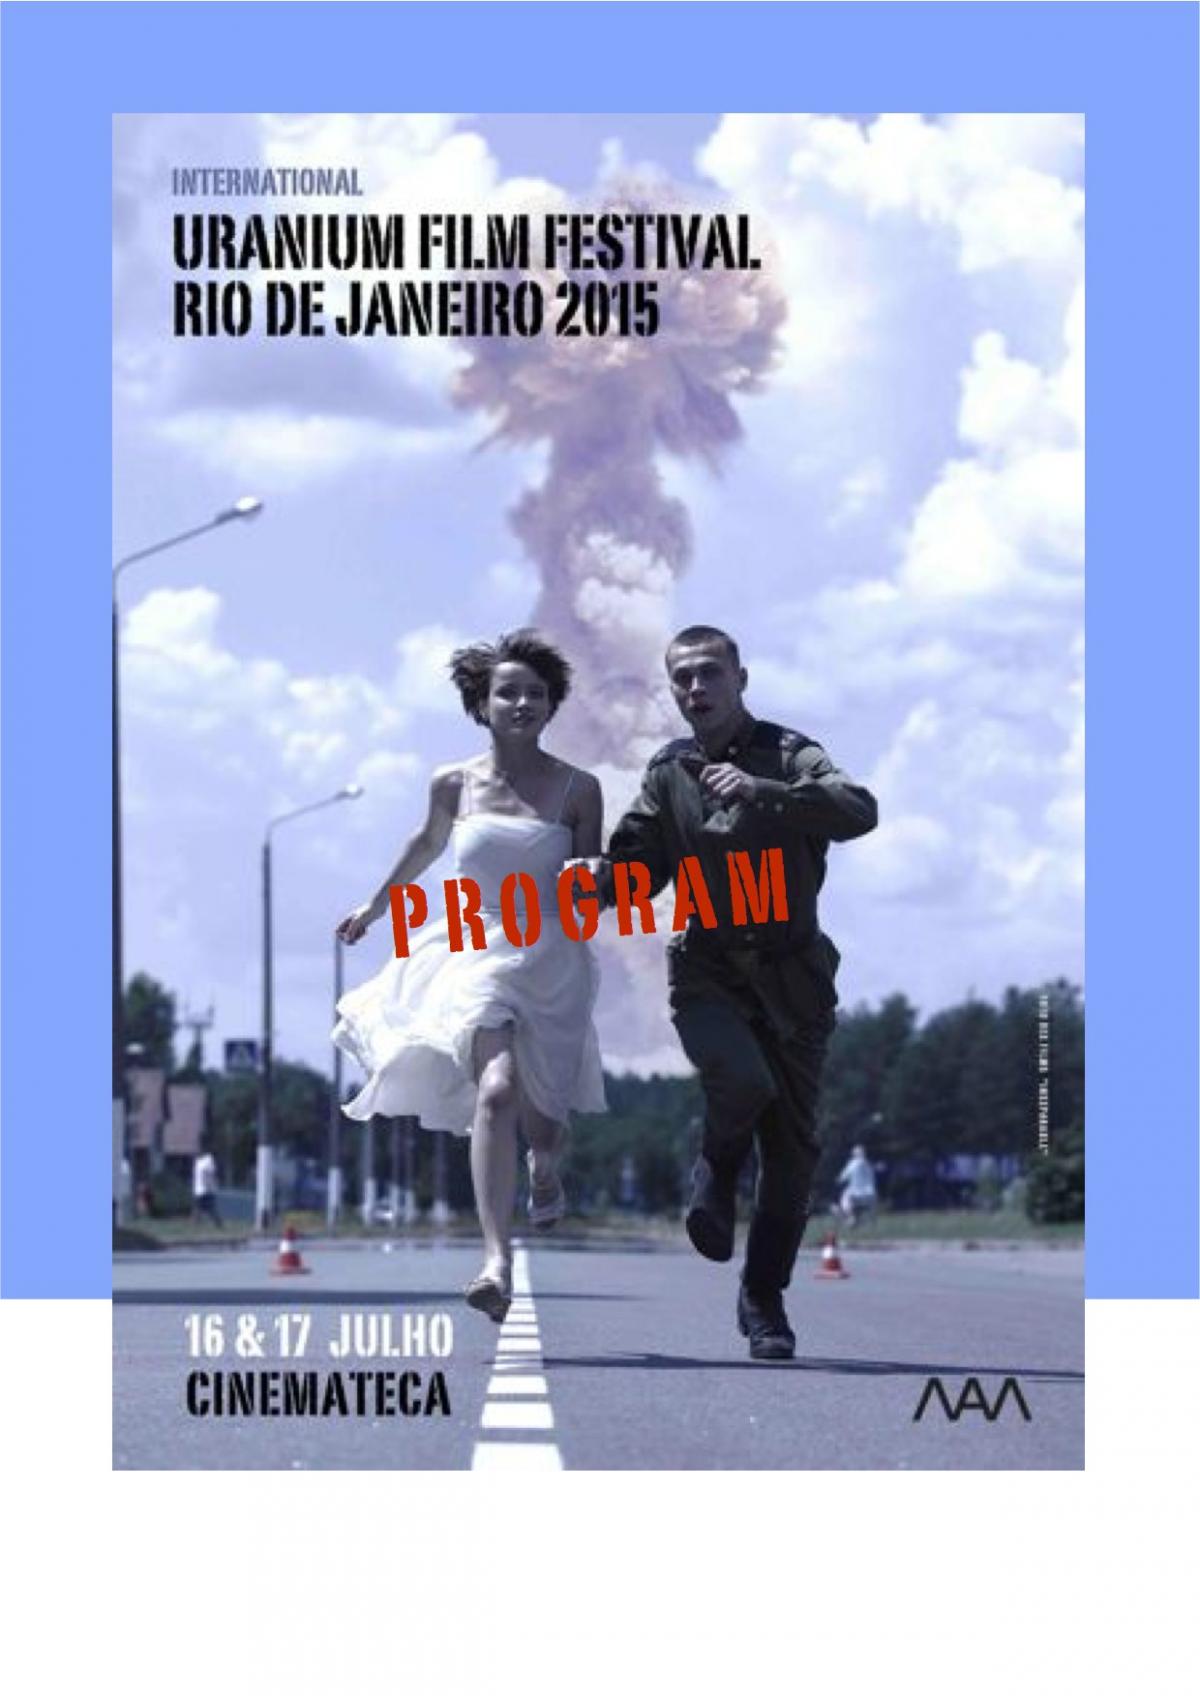 Catálogo Uranium Film Festival Rio 2015